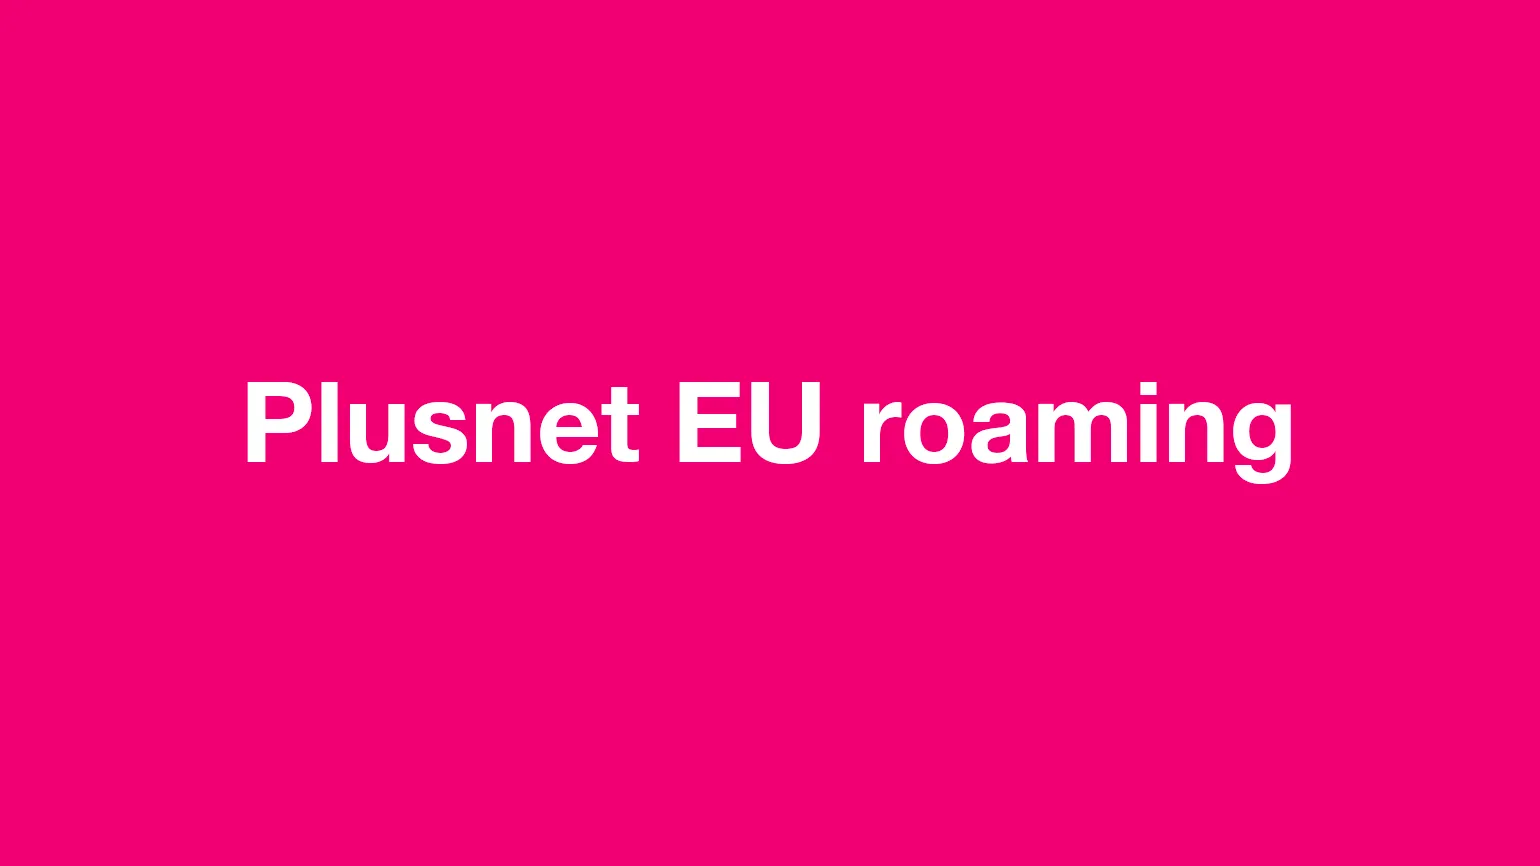 Plusnet EU roaming - after Brexit